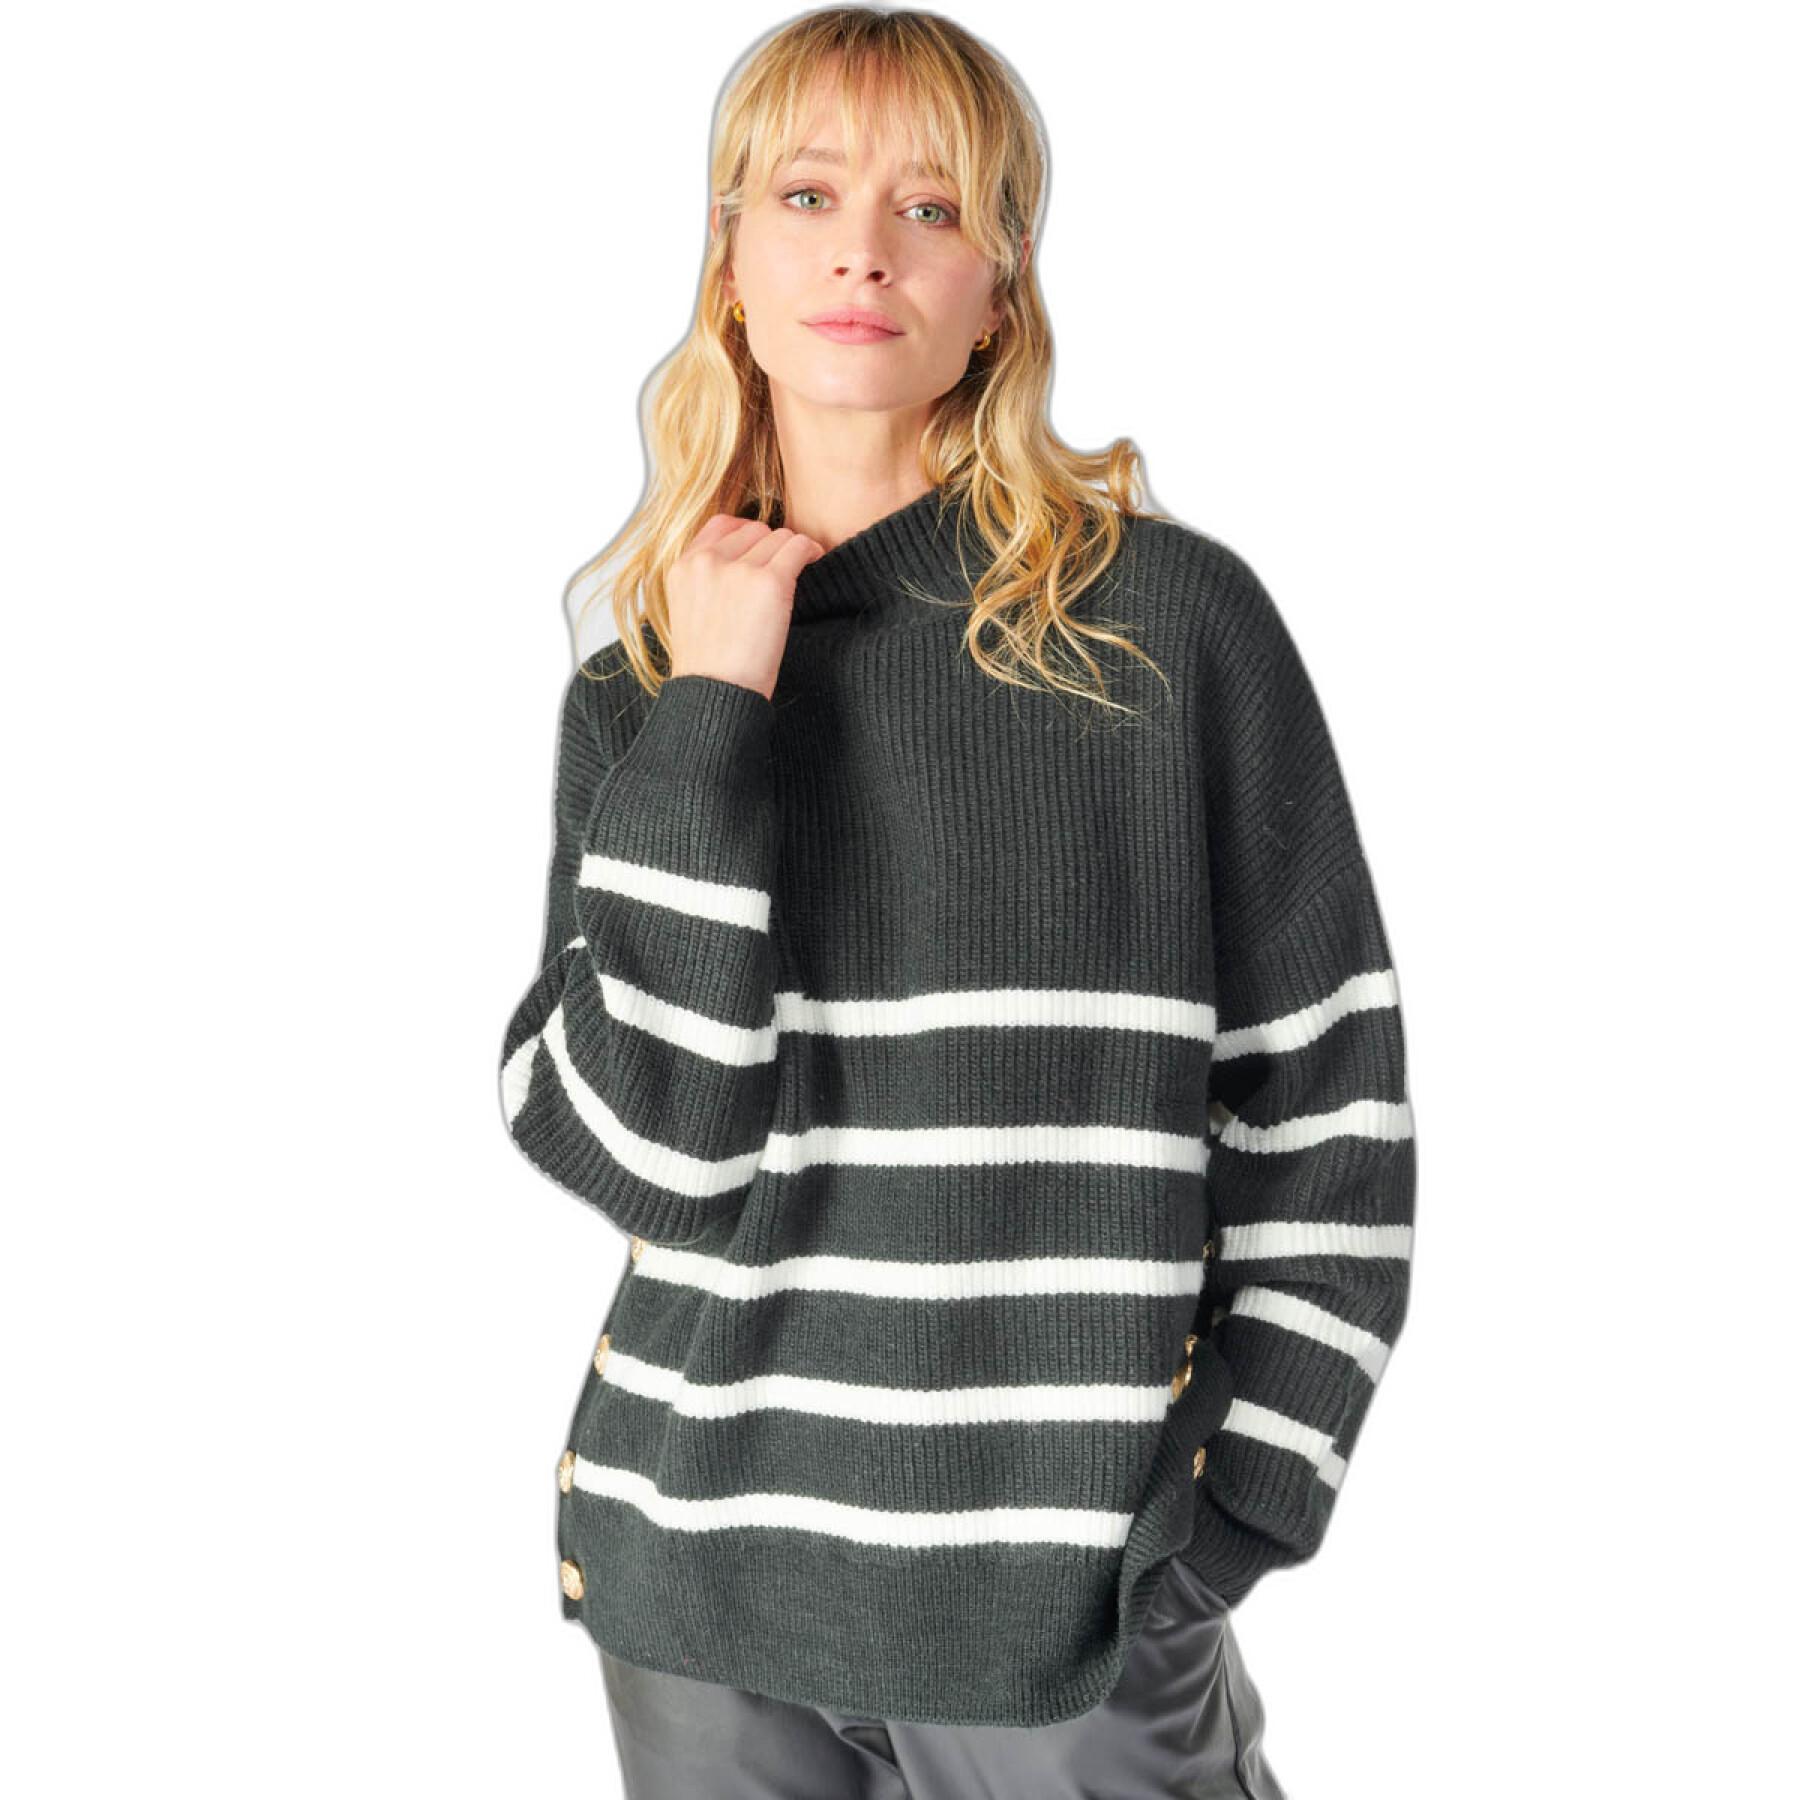 Women's sweater Le Temps des cerises Kimy